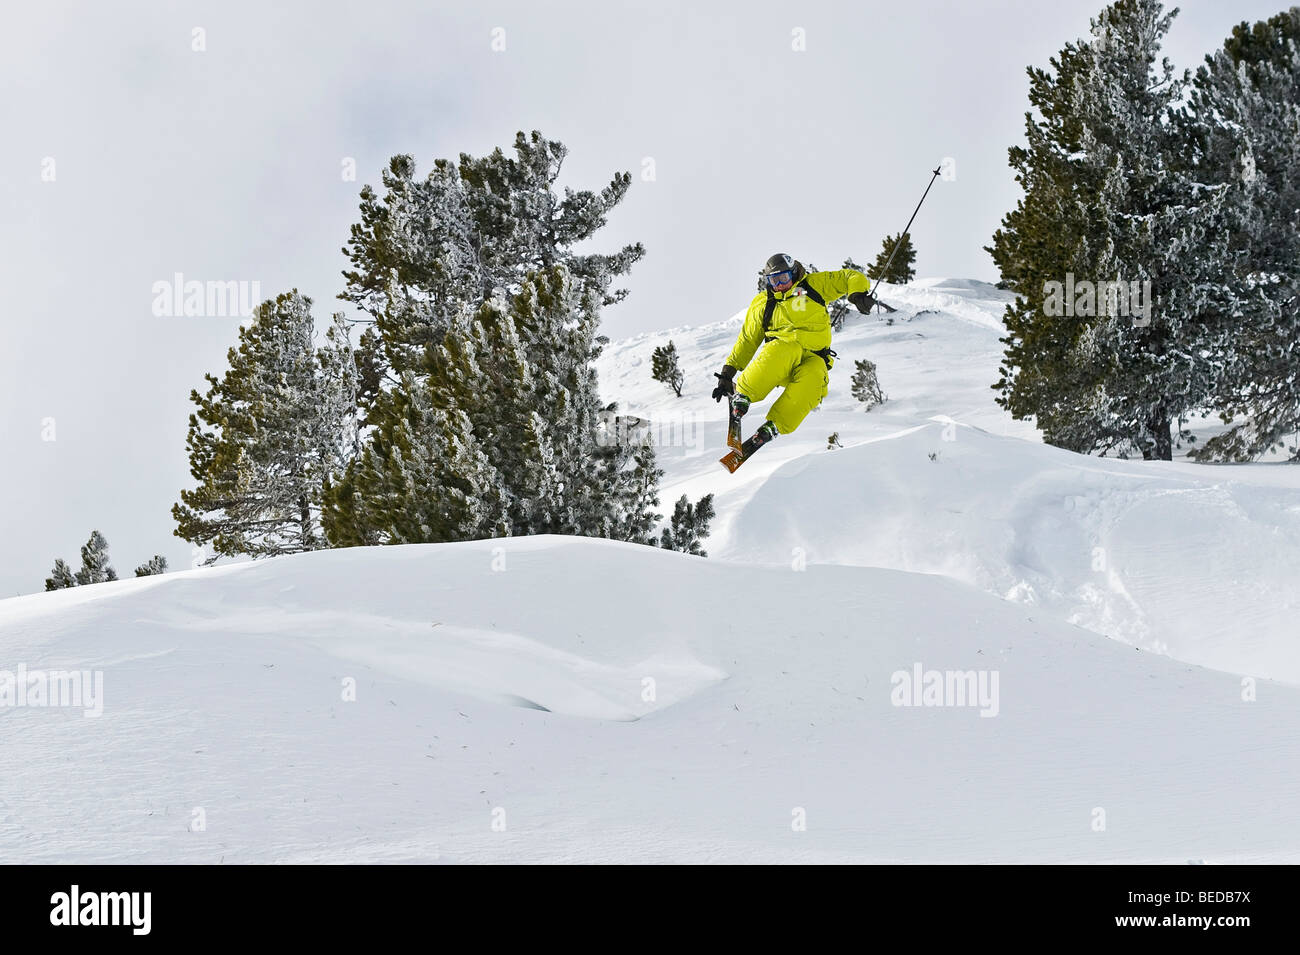 La neige profonde, skieur freerider, faisant une queue grab, sautant au dessus d'une corniche, Tyrol, Autriche, Europe Banque D'Images